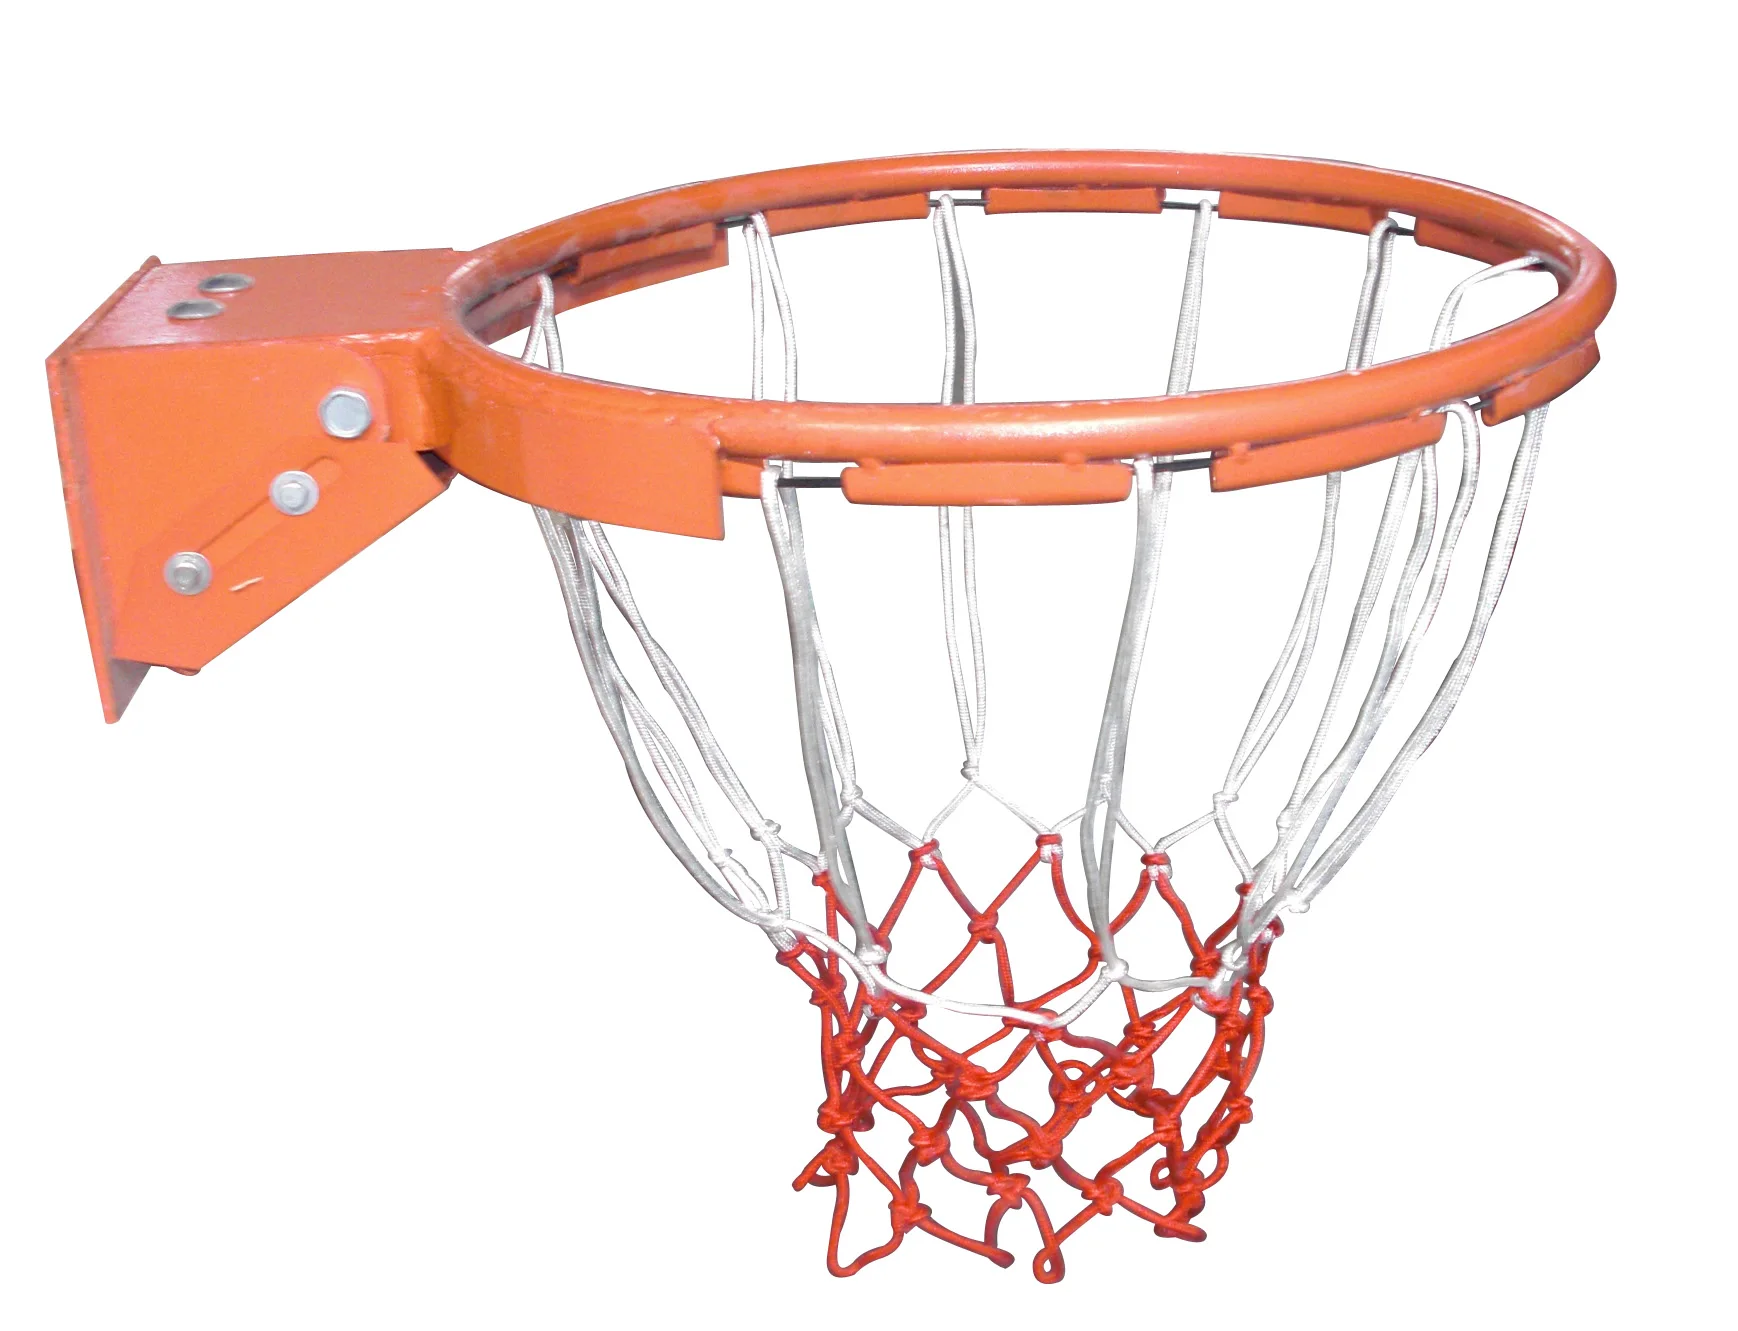 Кольцо для баскетбола